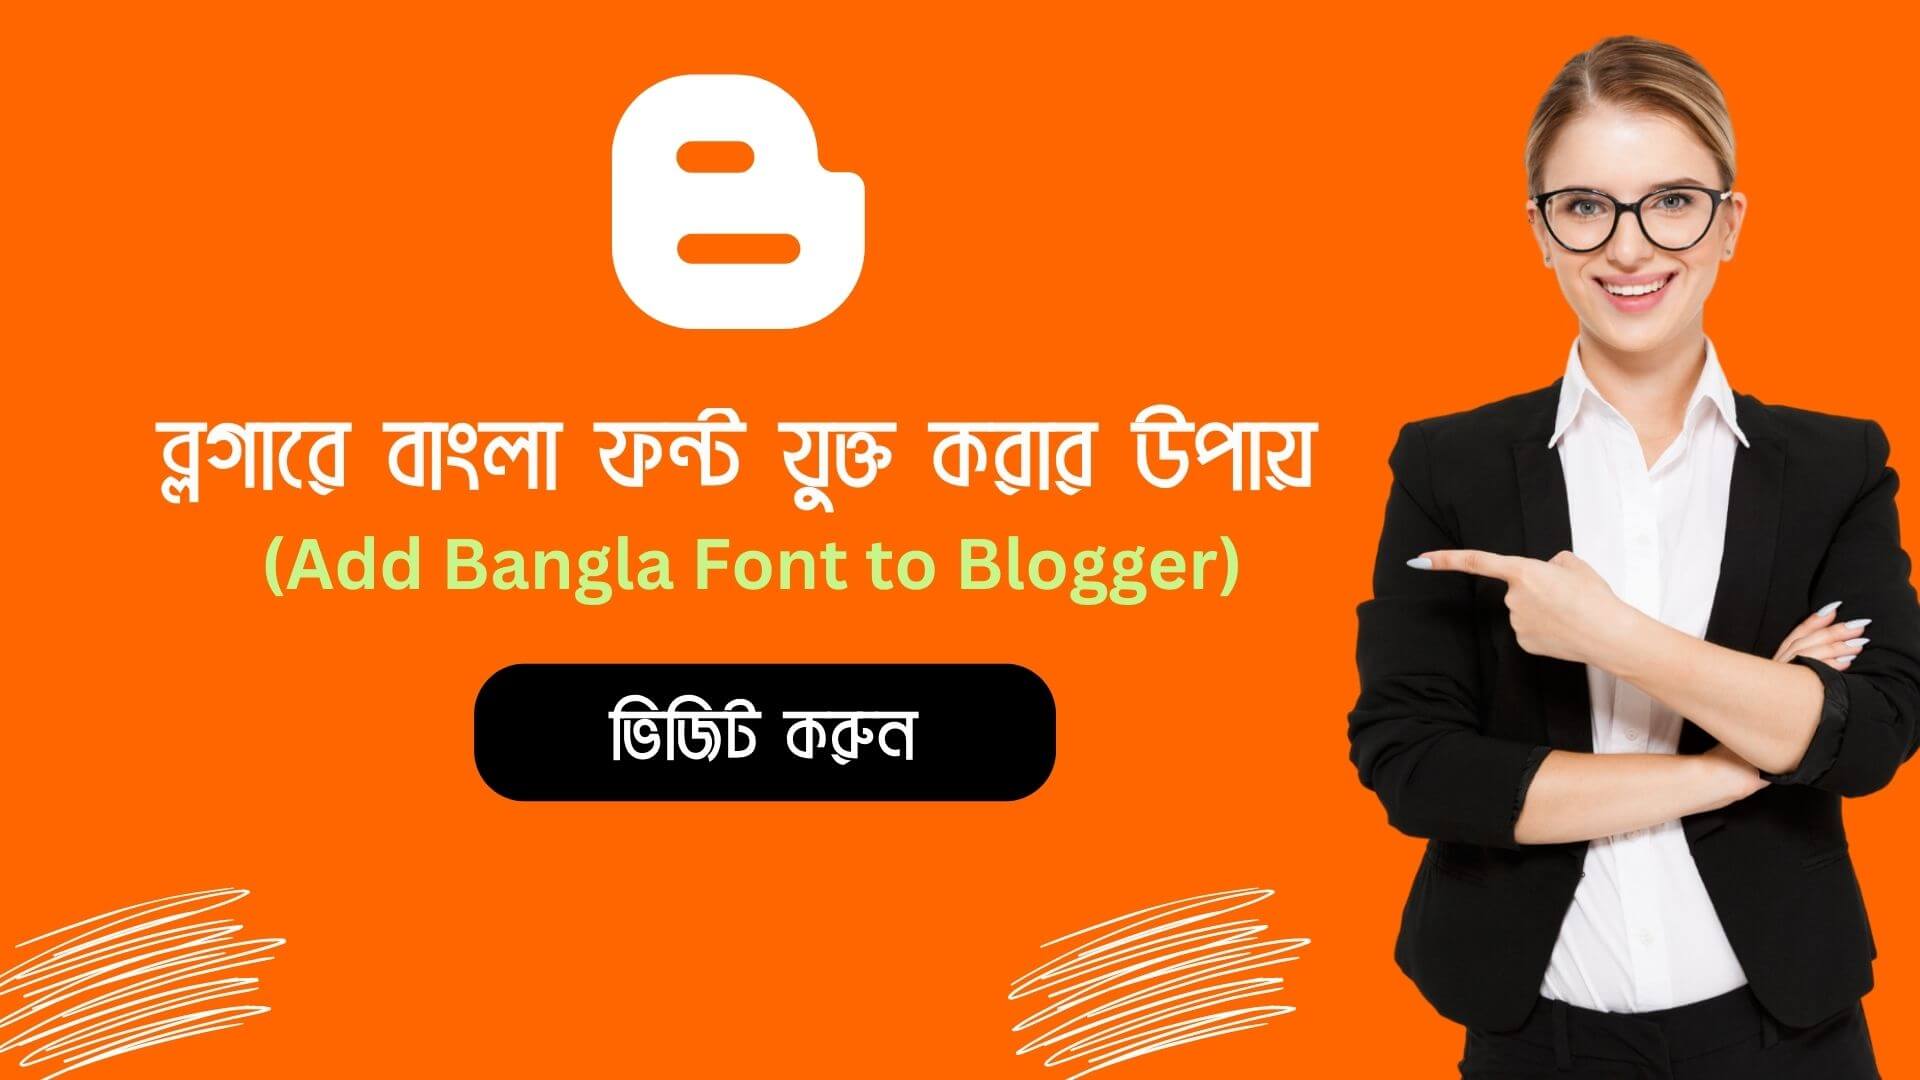 ব্লগারে বাংলা ফন্ট যুক্ত করার উপায় | Add Bangla Font to Blogger